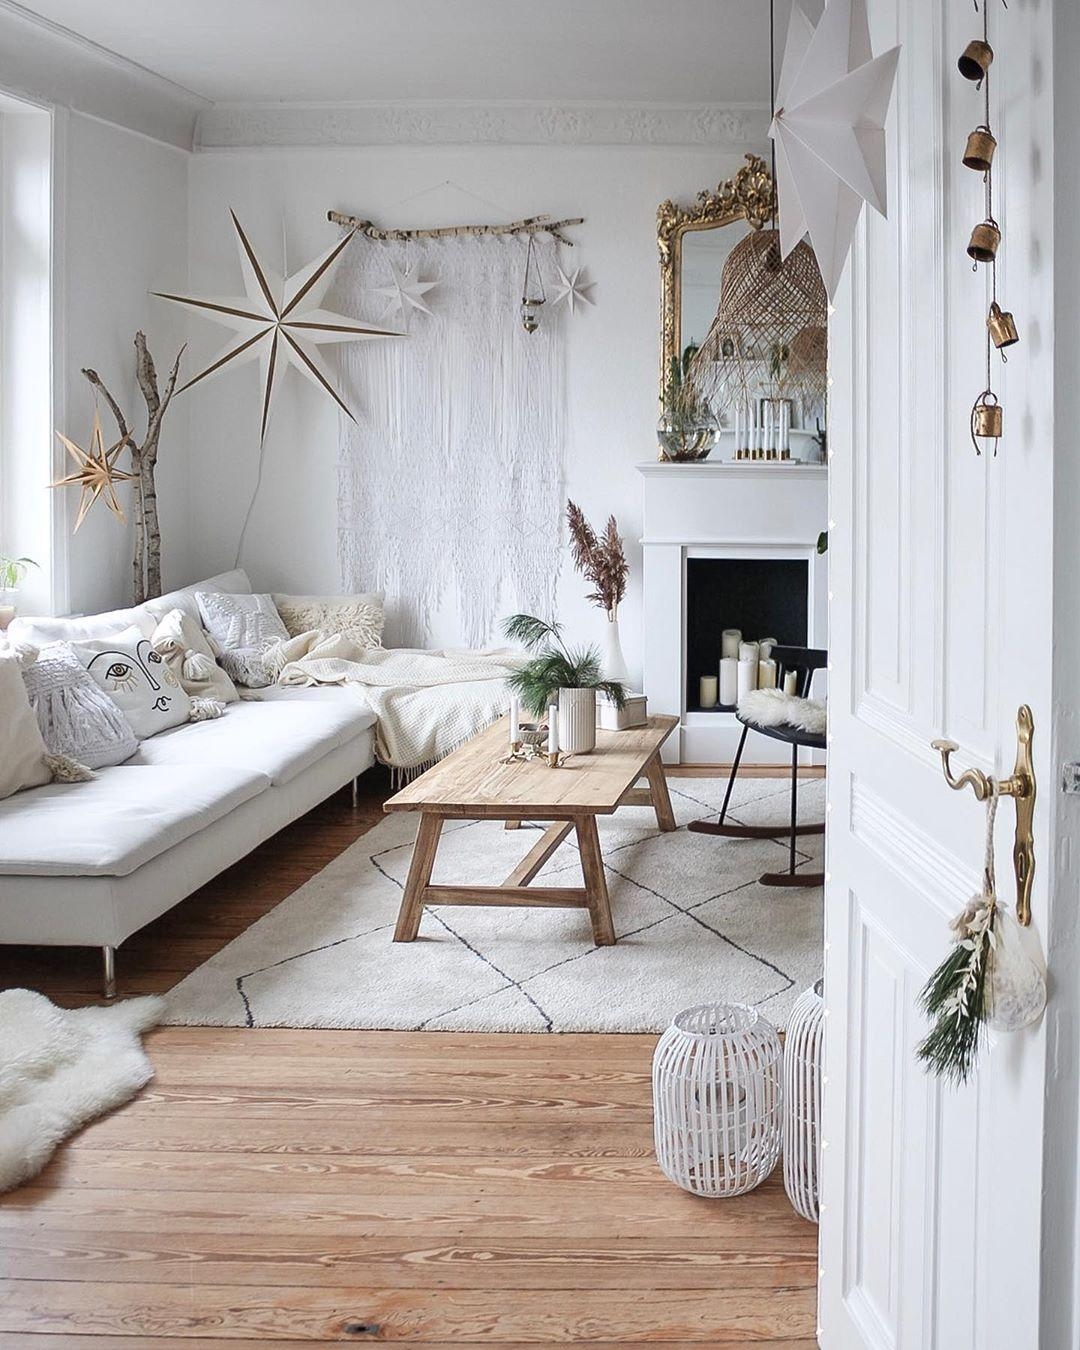 Wann stellt ihr eigentlich euren Weihnachtsbaum auf?🌲✨

#wohnzimmer #couchtisch #sofa #couchliebt #cozy #weihnachtsdeko